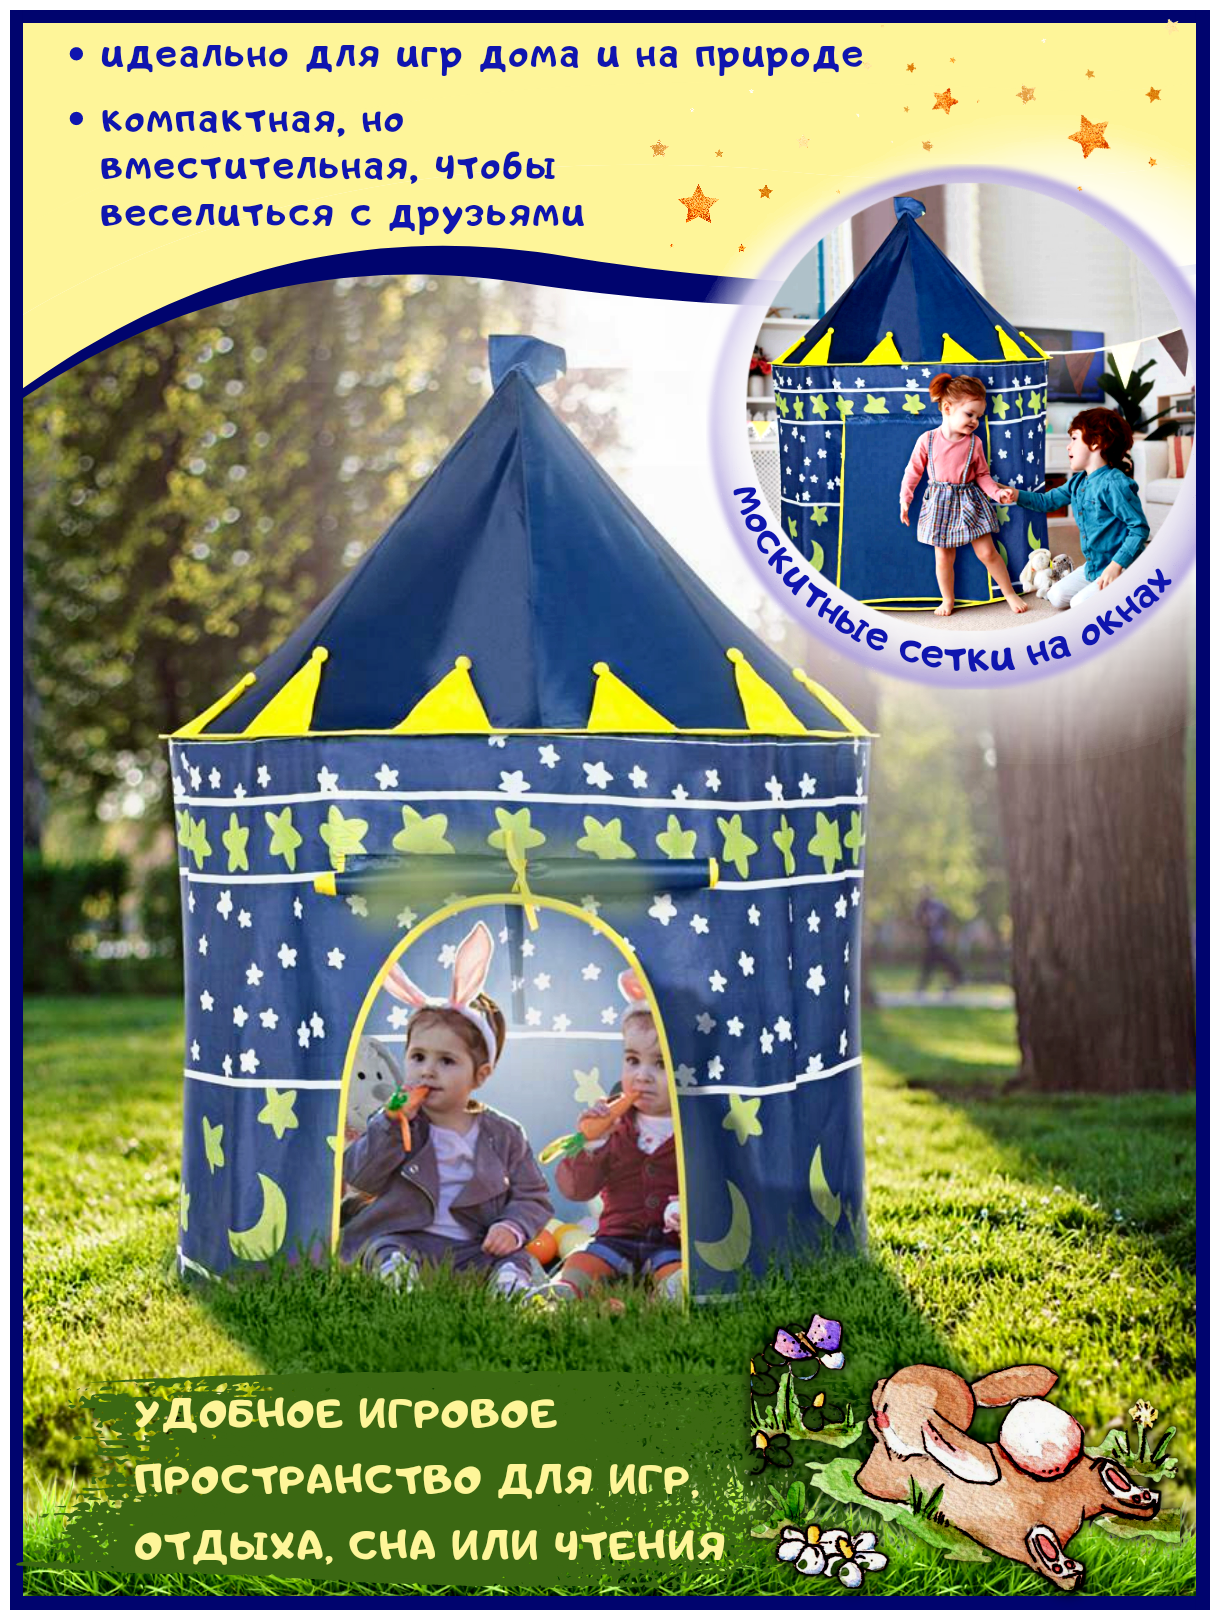 Детские игрушки для дома и улицы игровой домик палатка с замком принцессы подарок для детей (темно-синий)